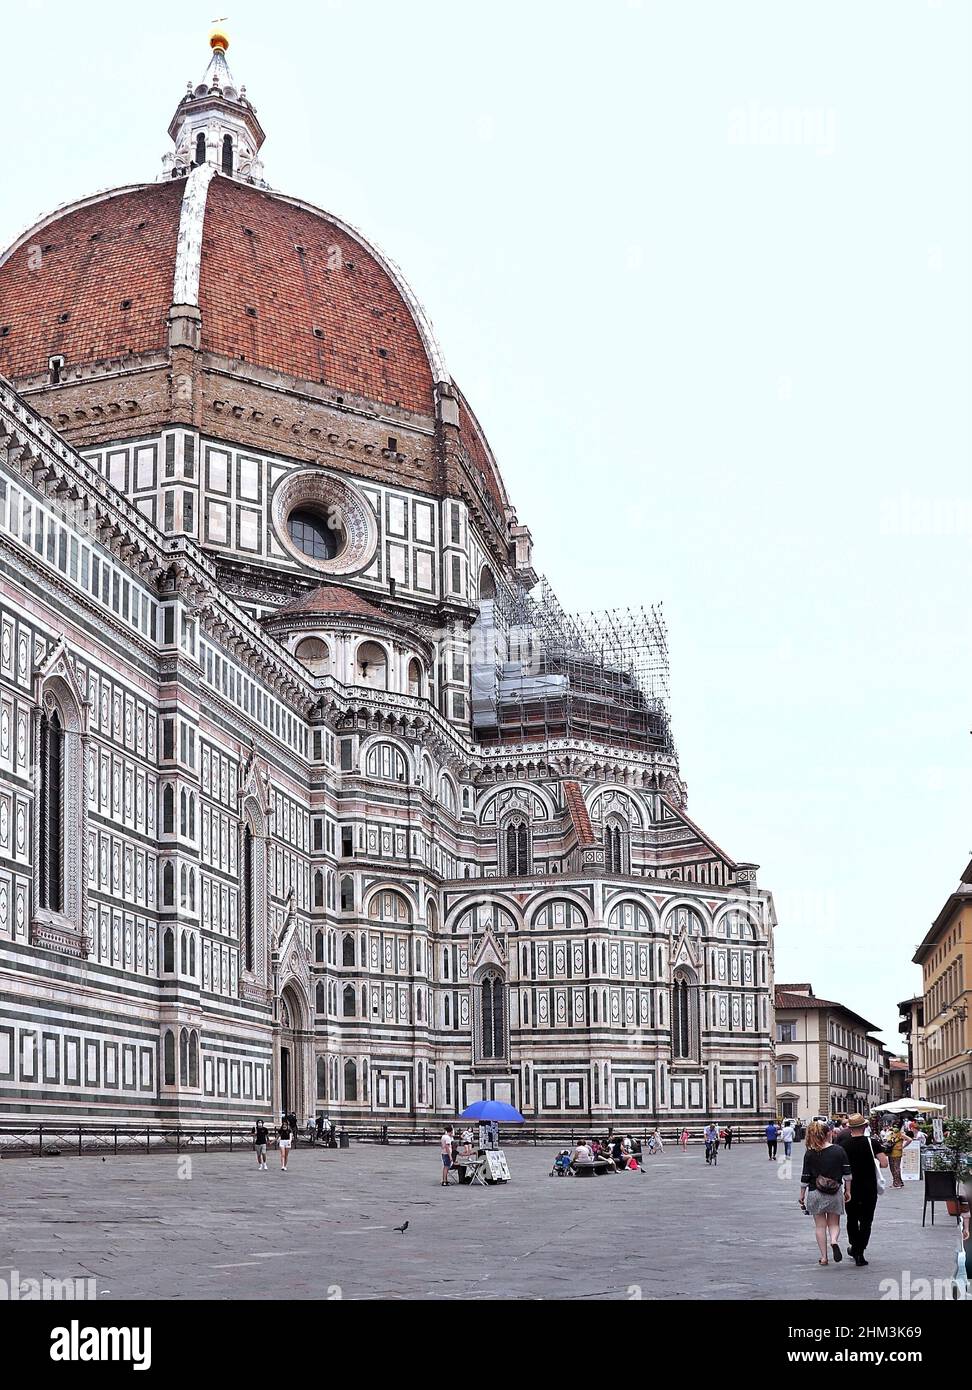 The Duomo of Florence/ duomo di Firenze Stock Photo